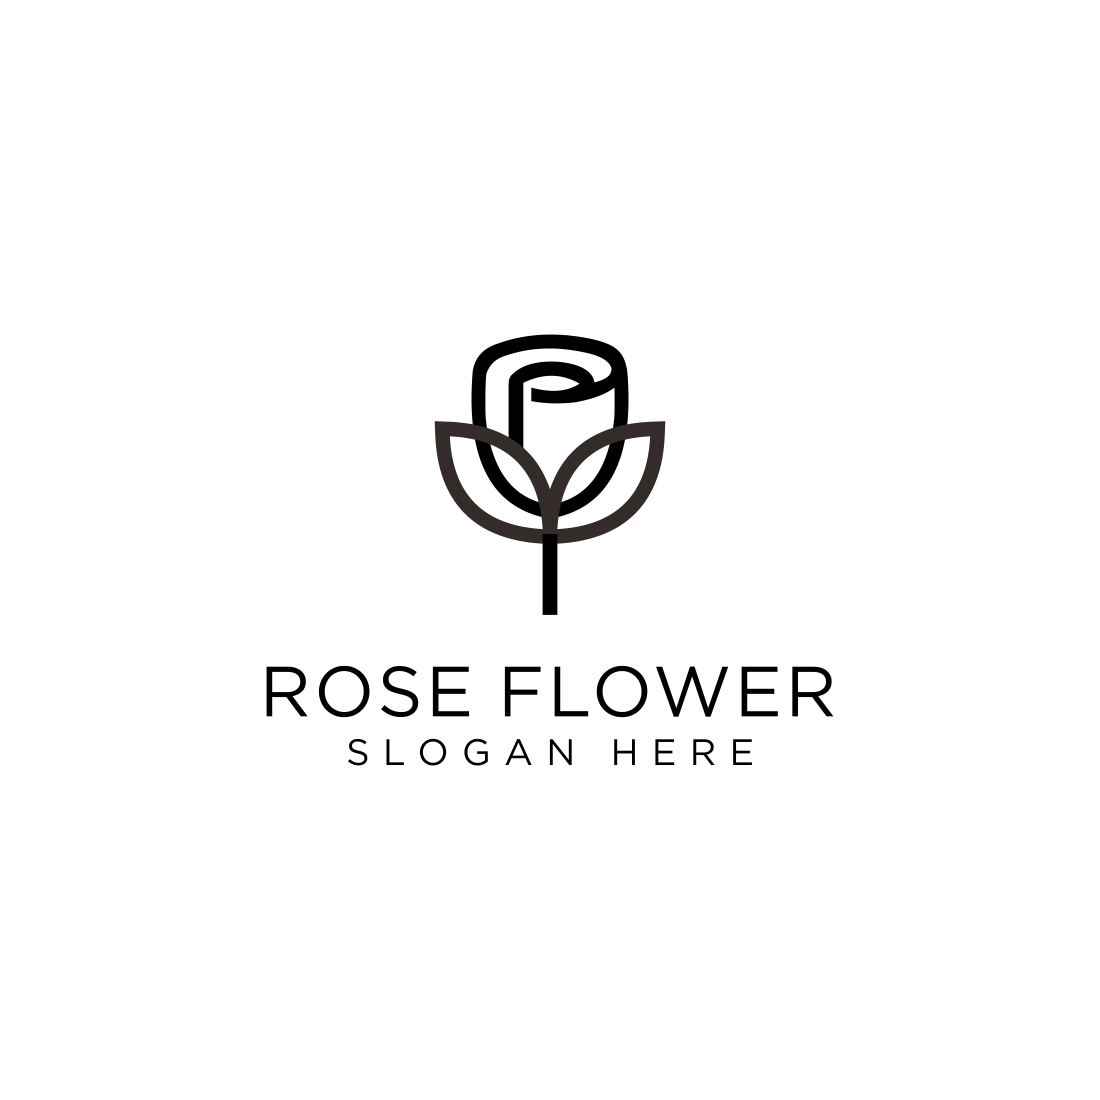 rose flower logo vector design cover image.